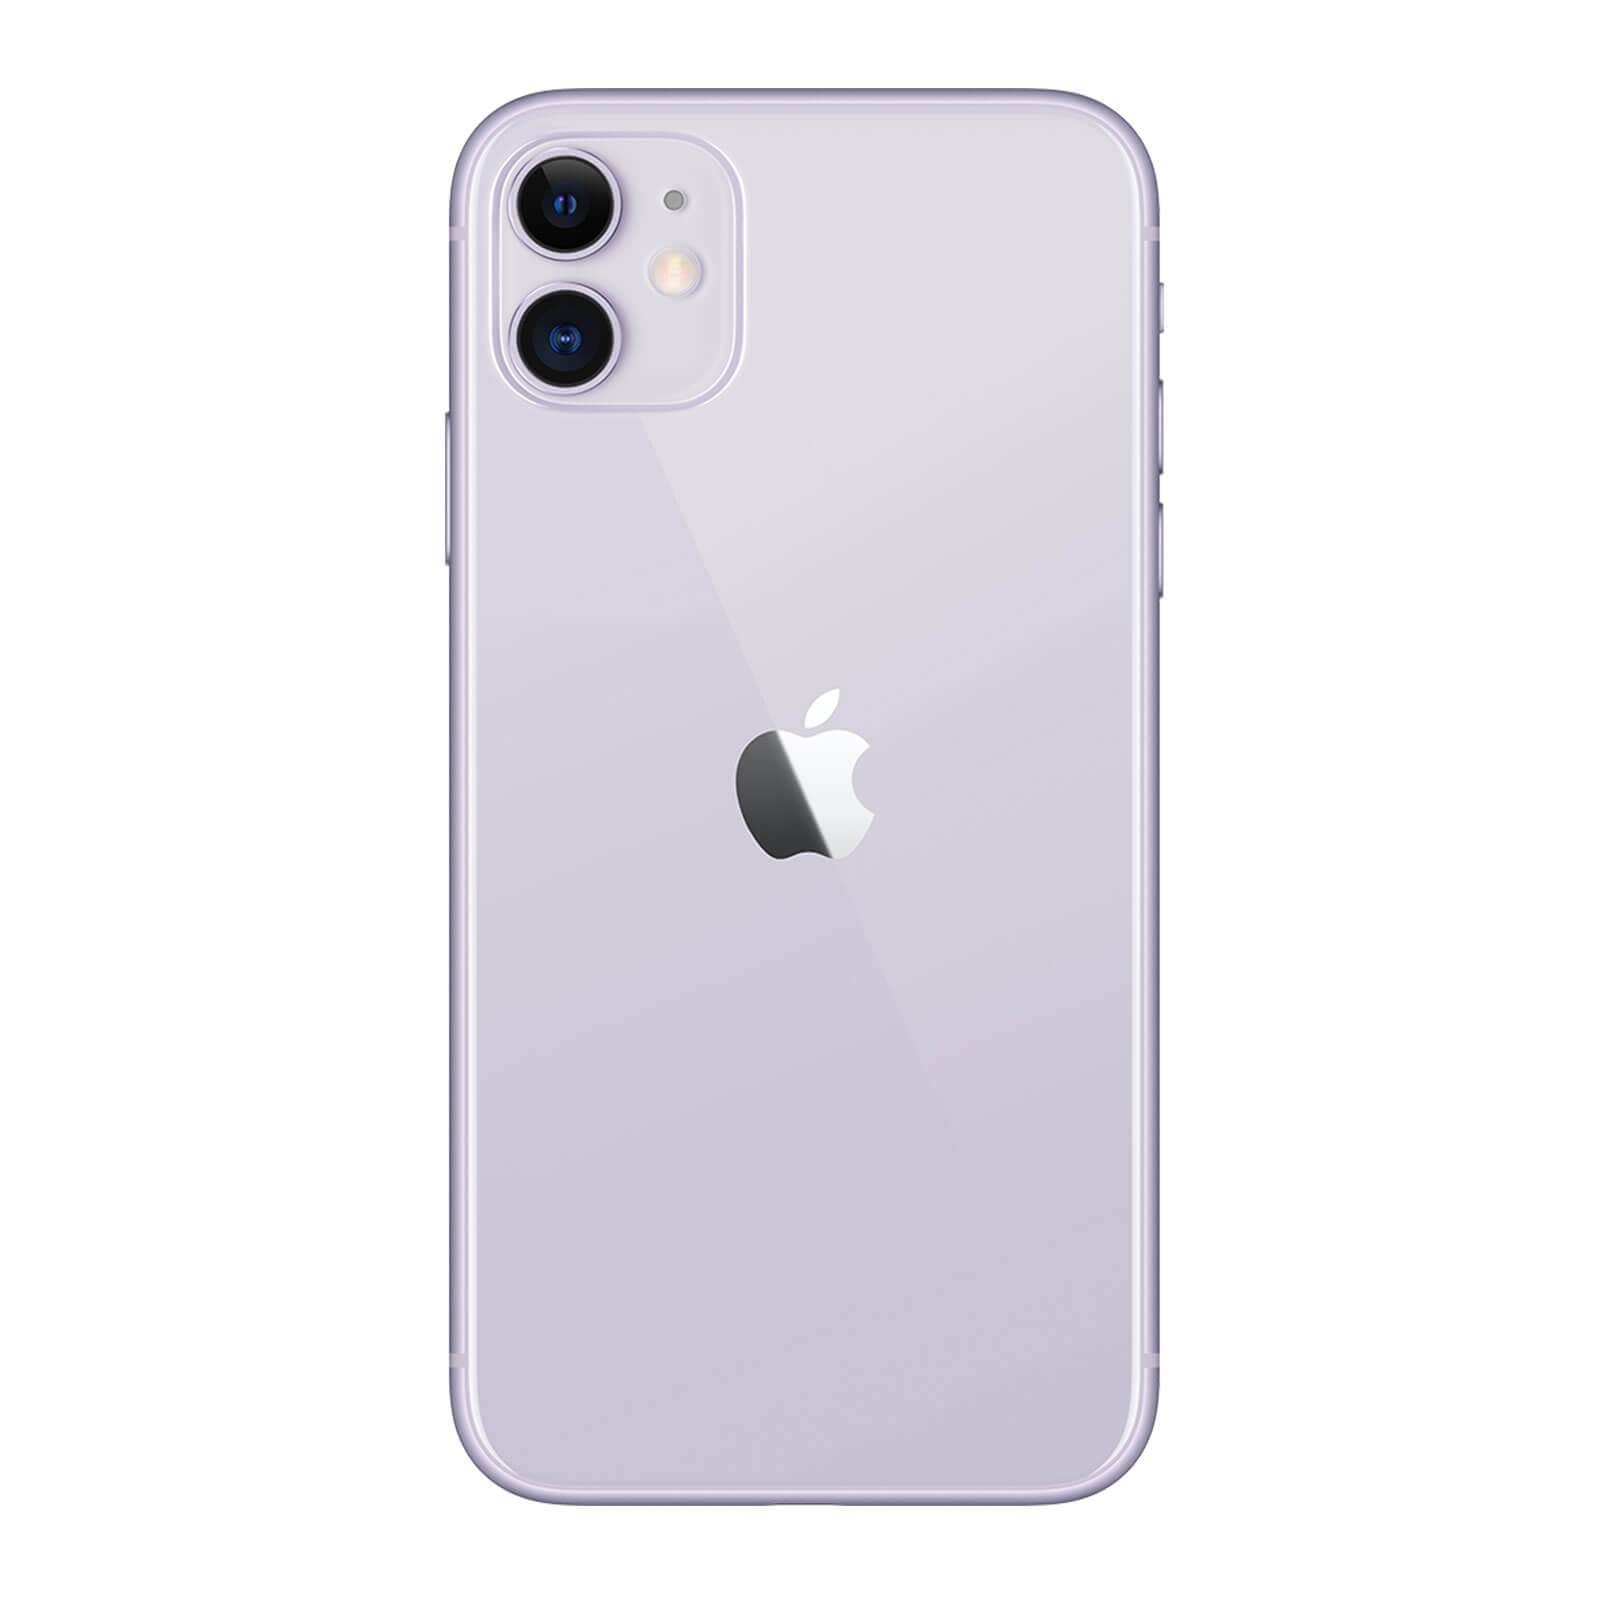 Apple iPhone 11 128GB Purple Pristine - Unlocked